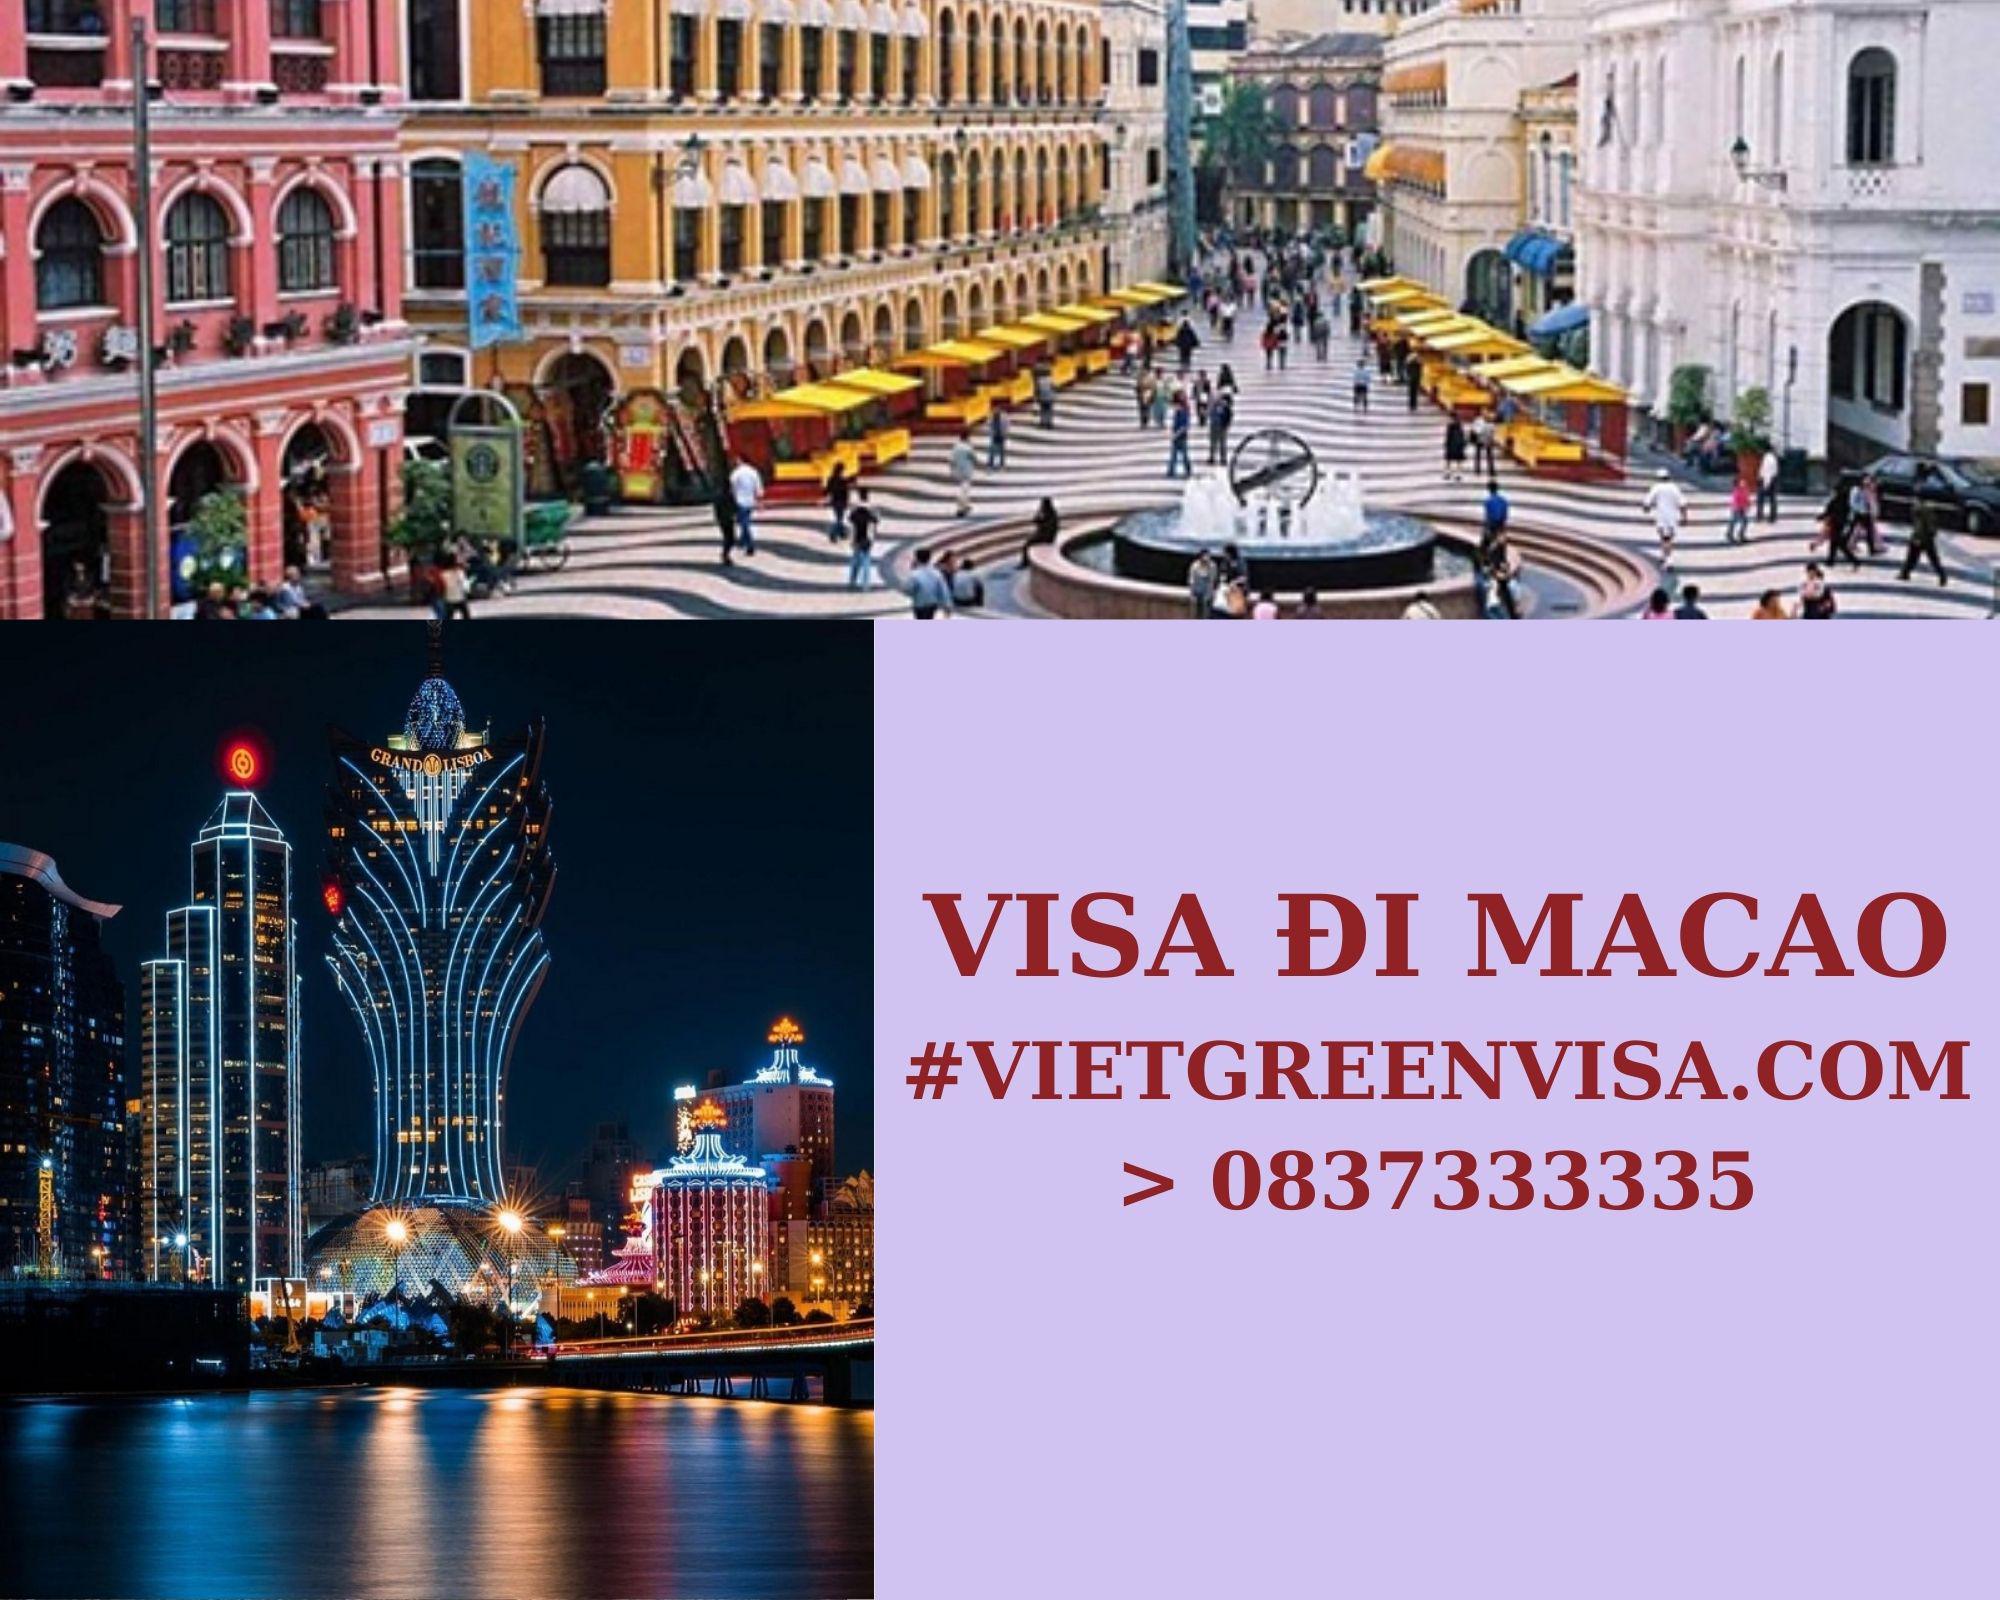 Làm Visa Macau thăm thân uy tín, nhanh chóng, giá rẻ